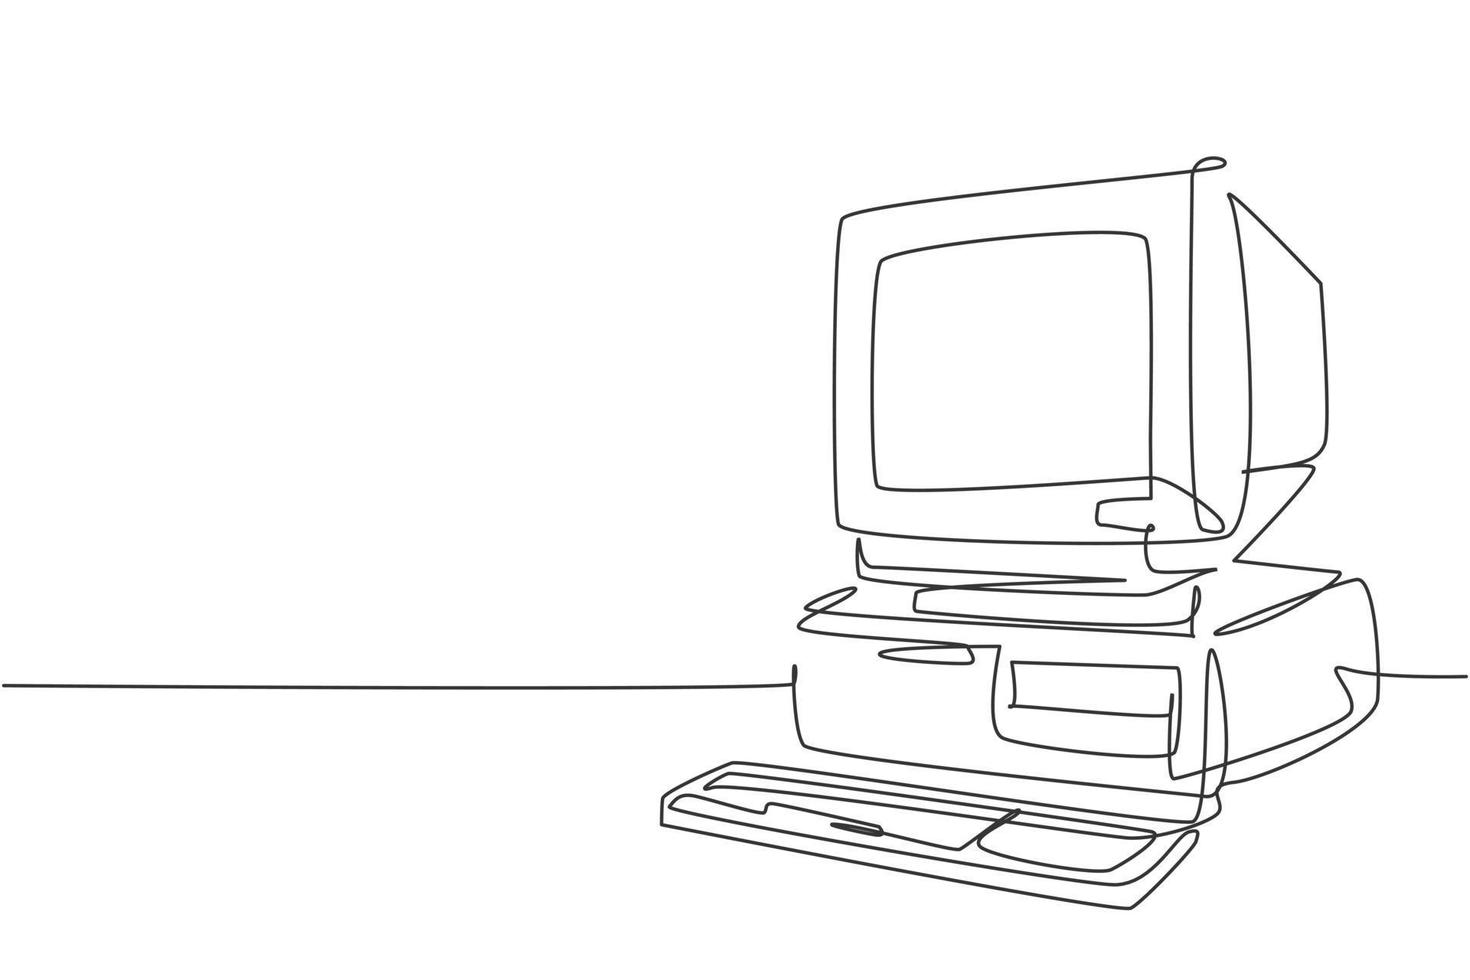 singolo disegno a linea continua di unità di processore per personal computer classico retrò. cpu vintage con monitor analogico e tastiera concetto di elemento una linea disegno grafico illustrazione vettoriale